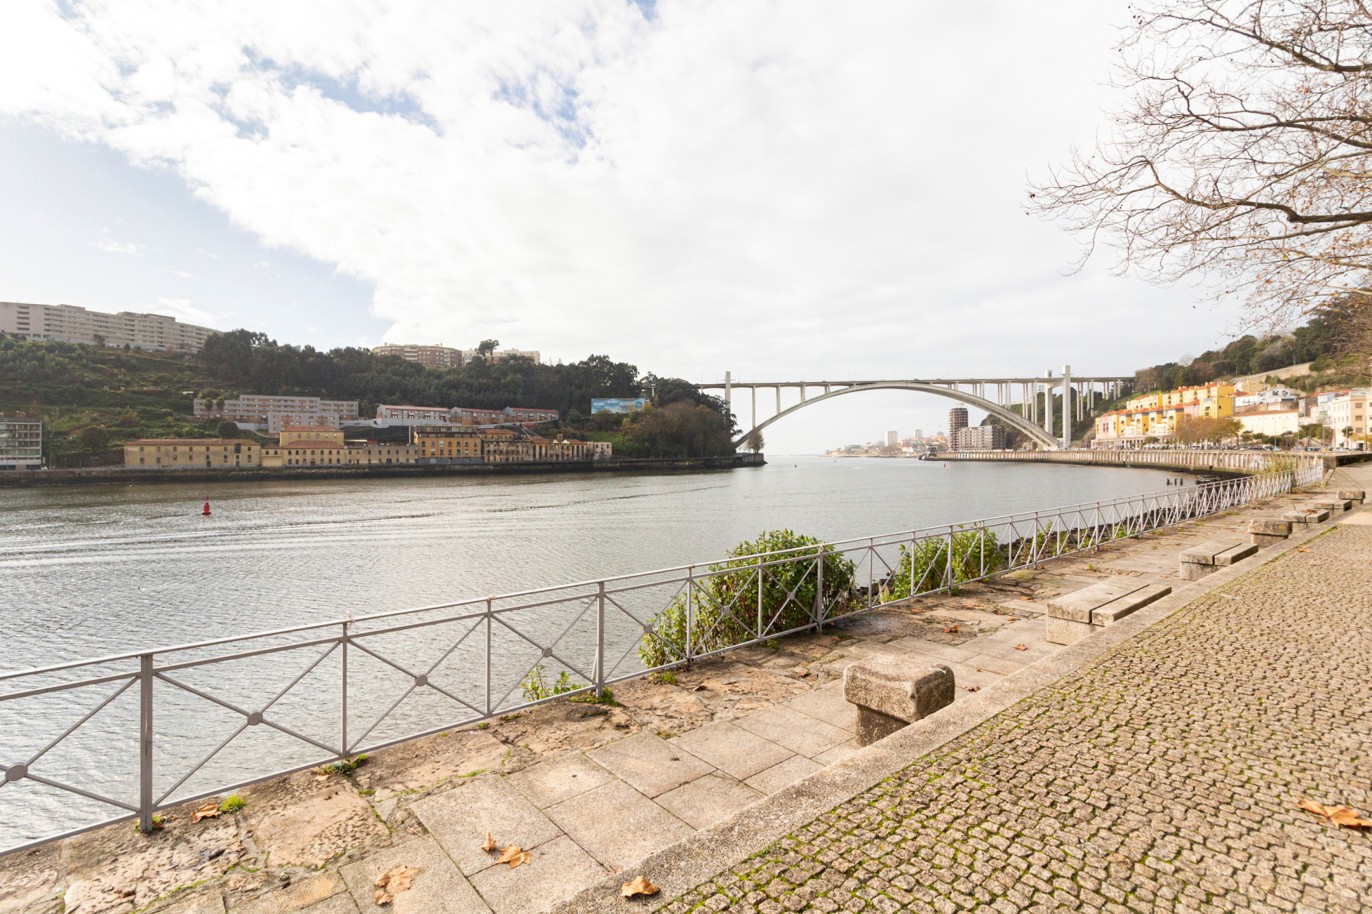 Nueva villa, para alquilar, de 2 dormitorios en condominio privado, cerca del río, Oporto, Portugal_217223